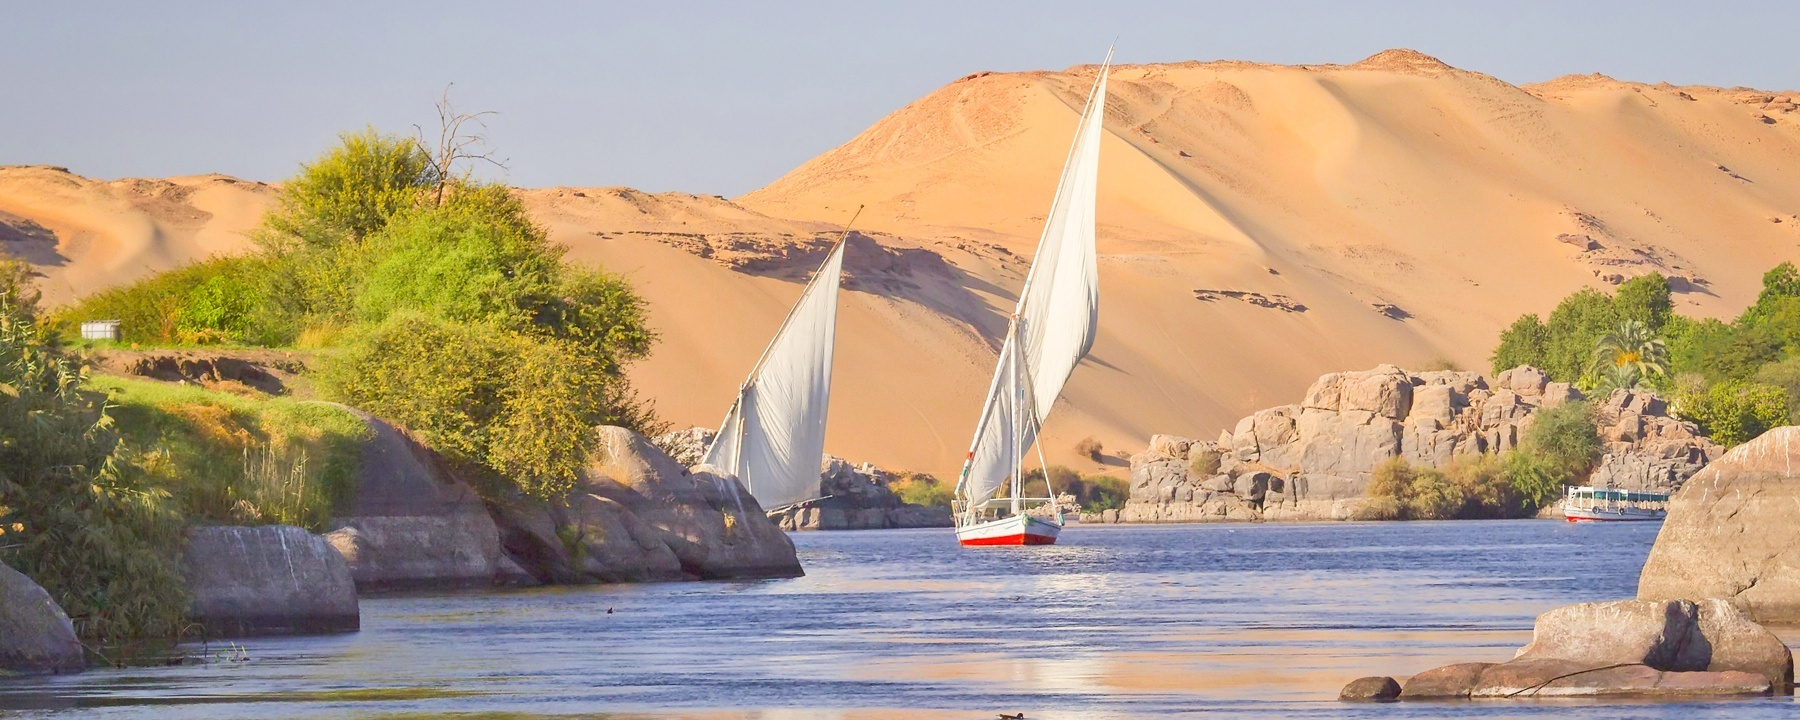 Itinerario Egitto 16 giorni